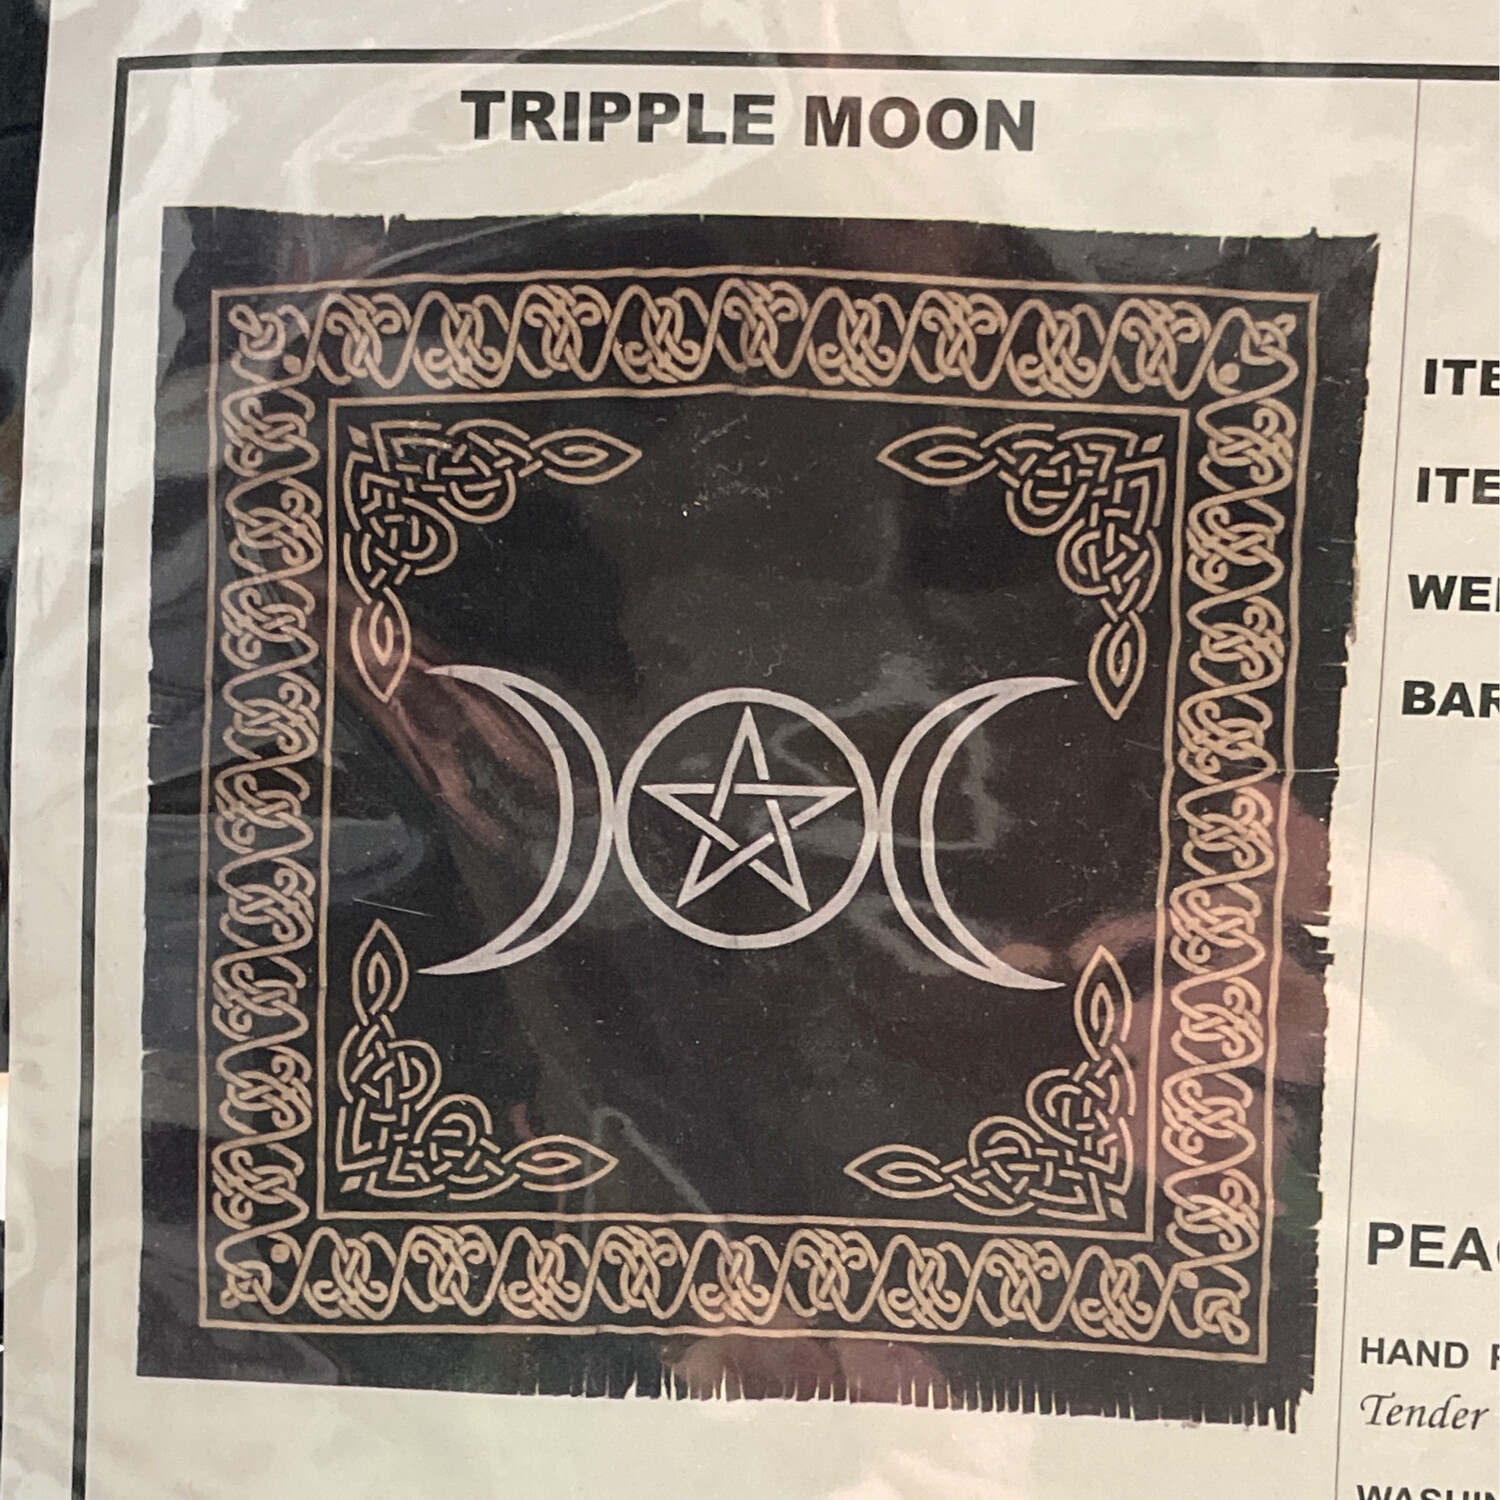 Tissu pour autel avec triple moon